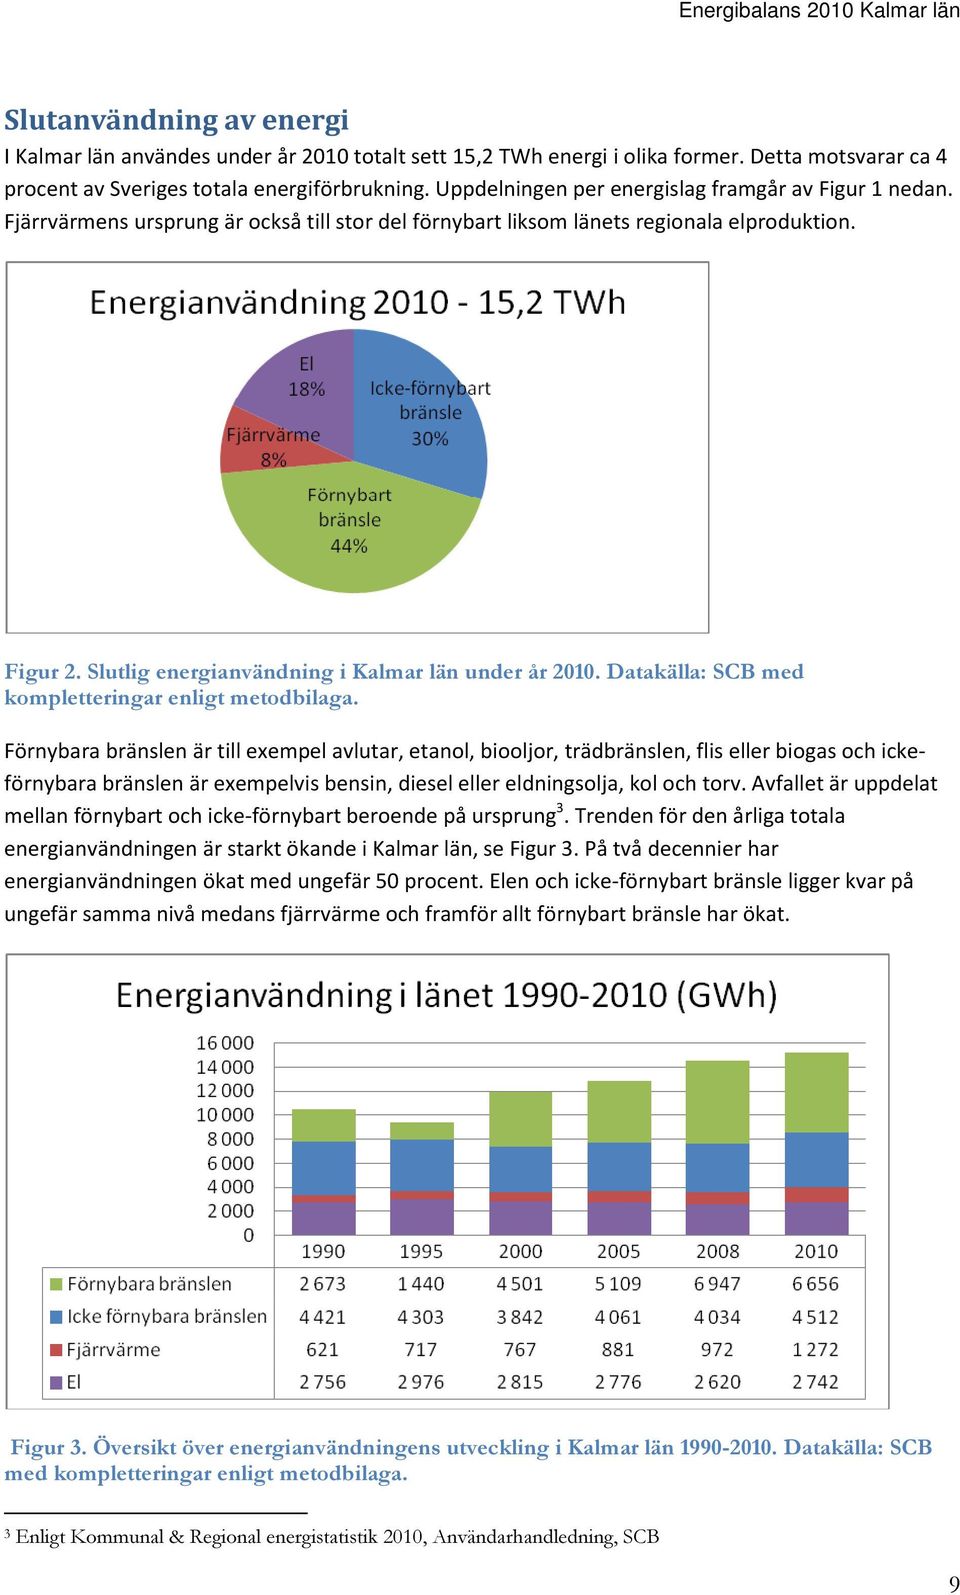 Slutlig energianvändning i Kalmar län under år 2010. Datakälla: SCB med kompletteringar enligt metodbilaga.